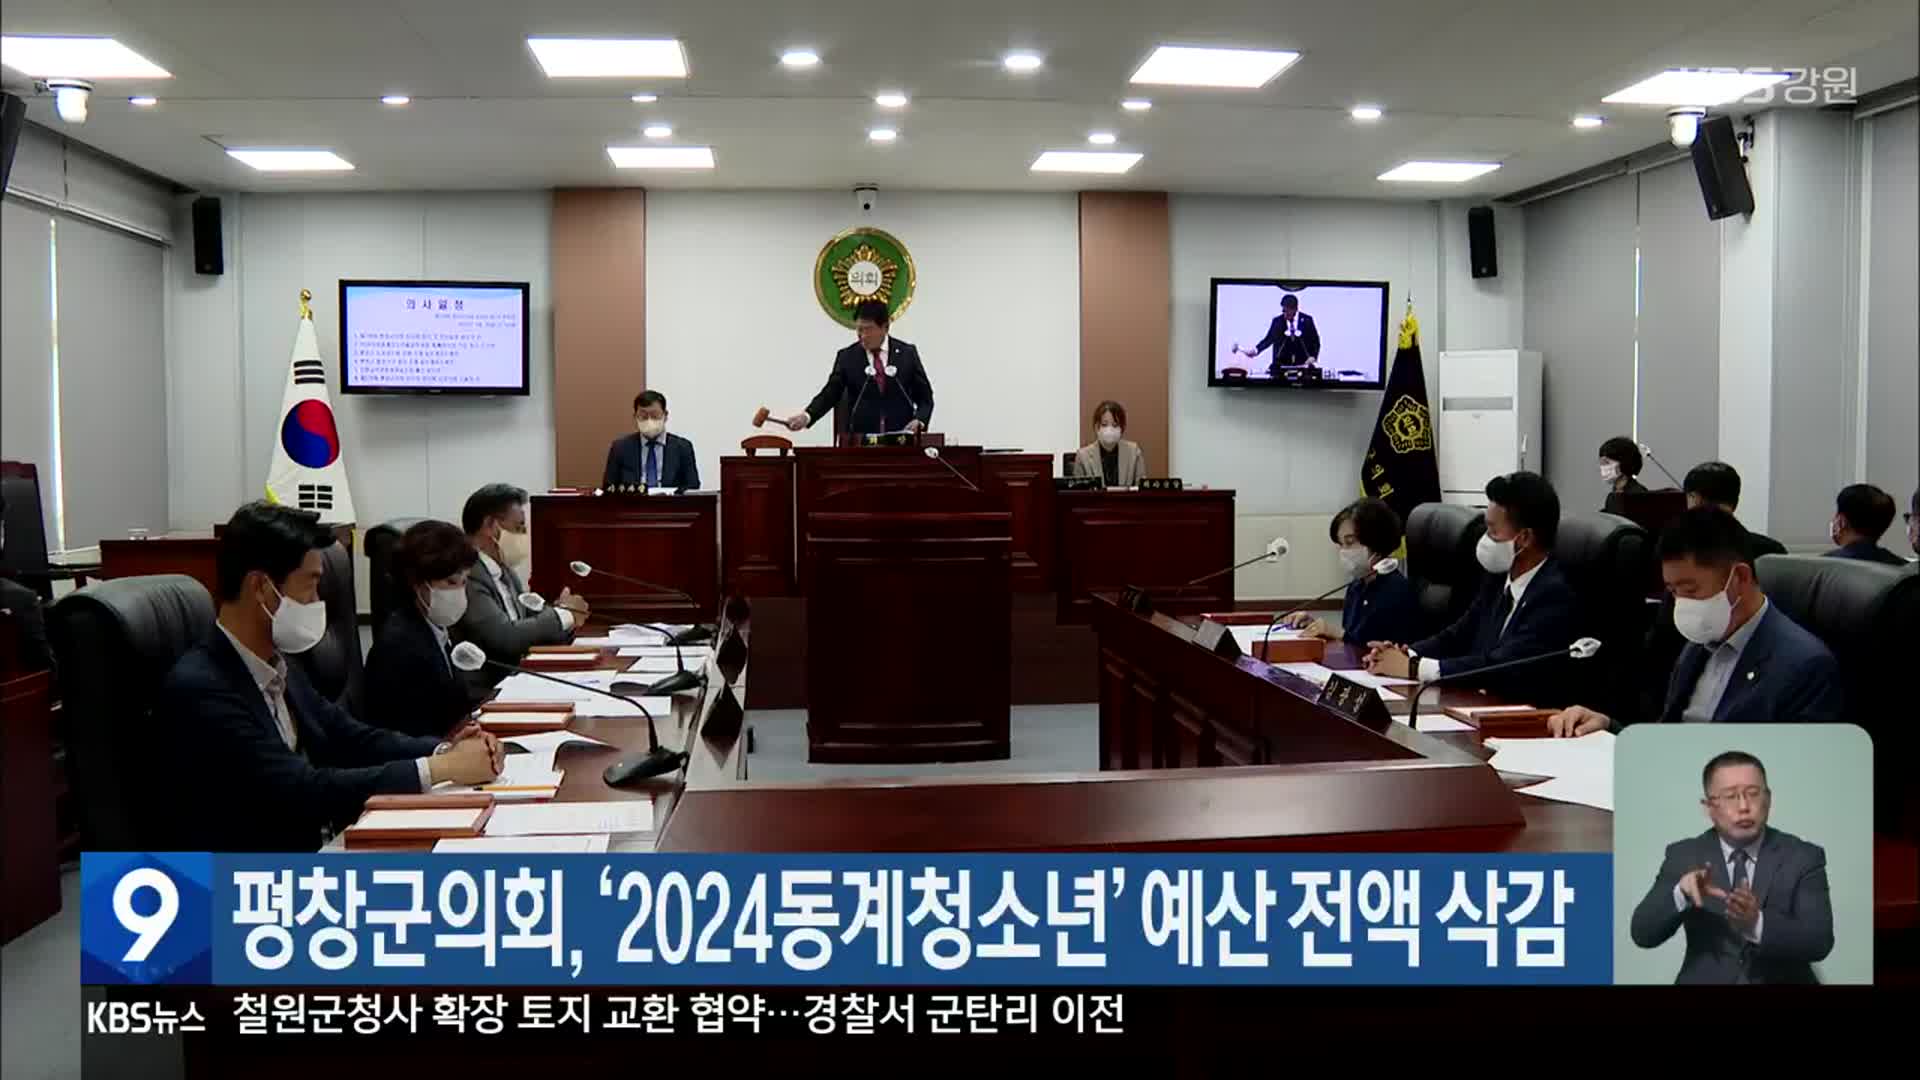 평창군의회, ‘2024동계청소년’ 예산 전액 삭감